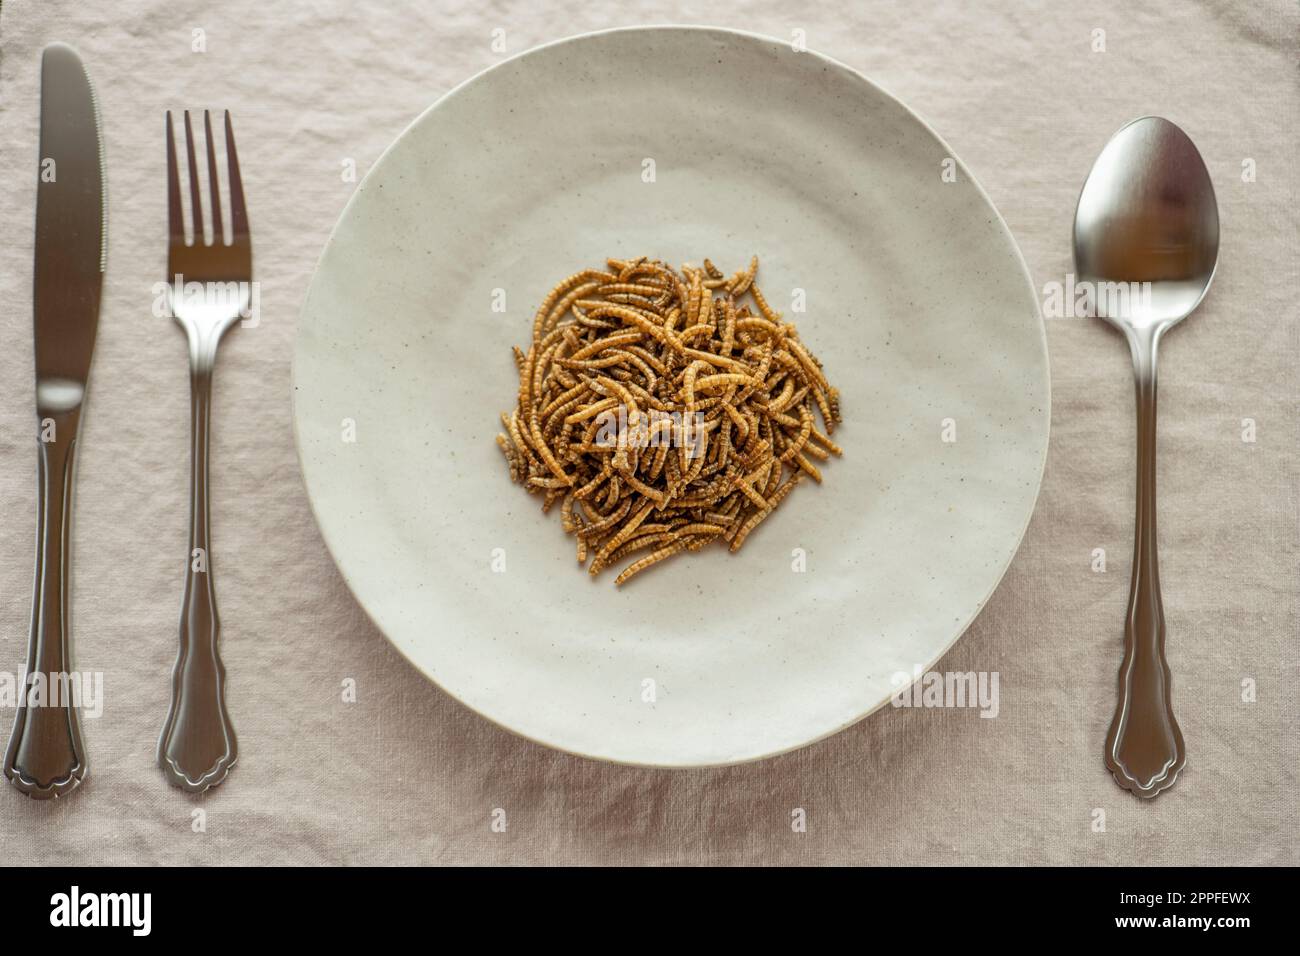 Mehl trockene Würmer auf einem Teller auf dem Tisch.Ansicht von oben. Insektenfutter. Stockfoto